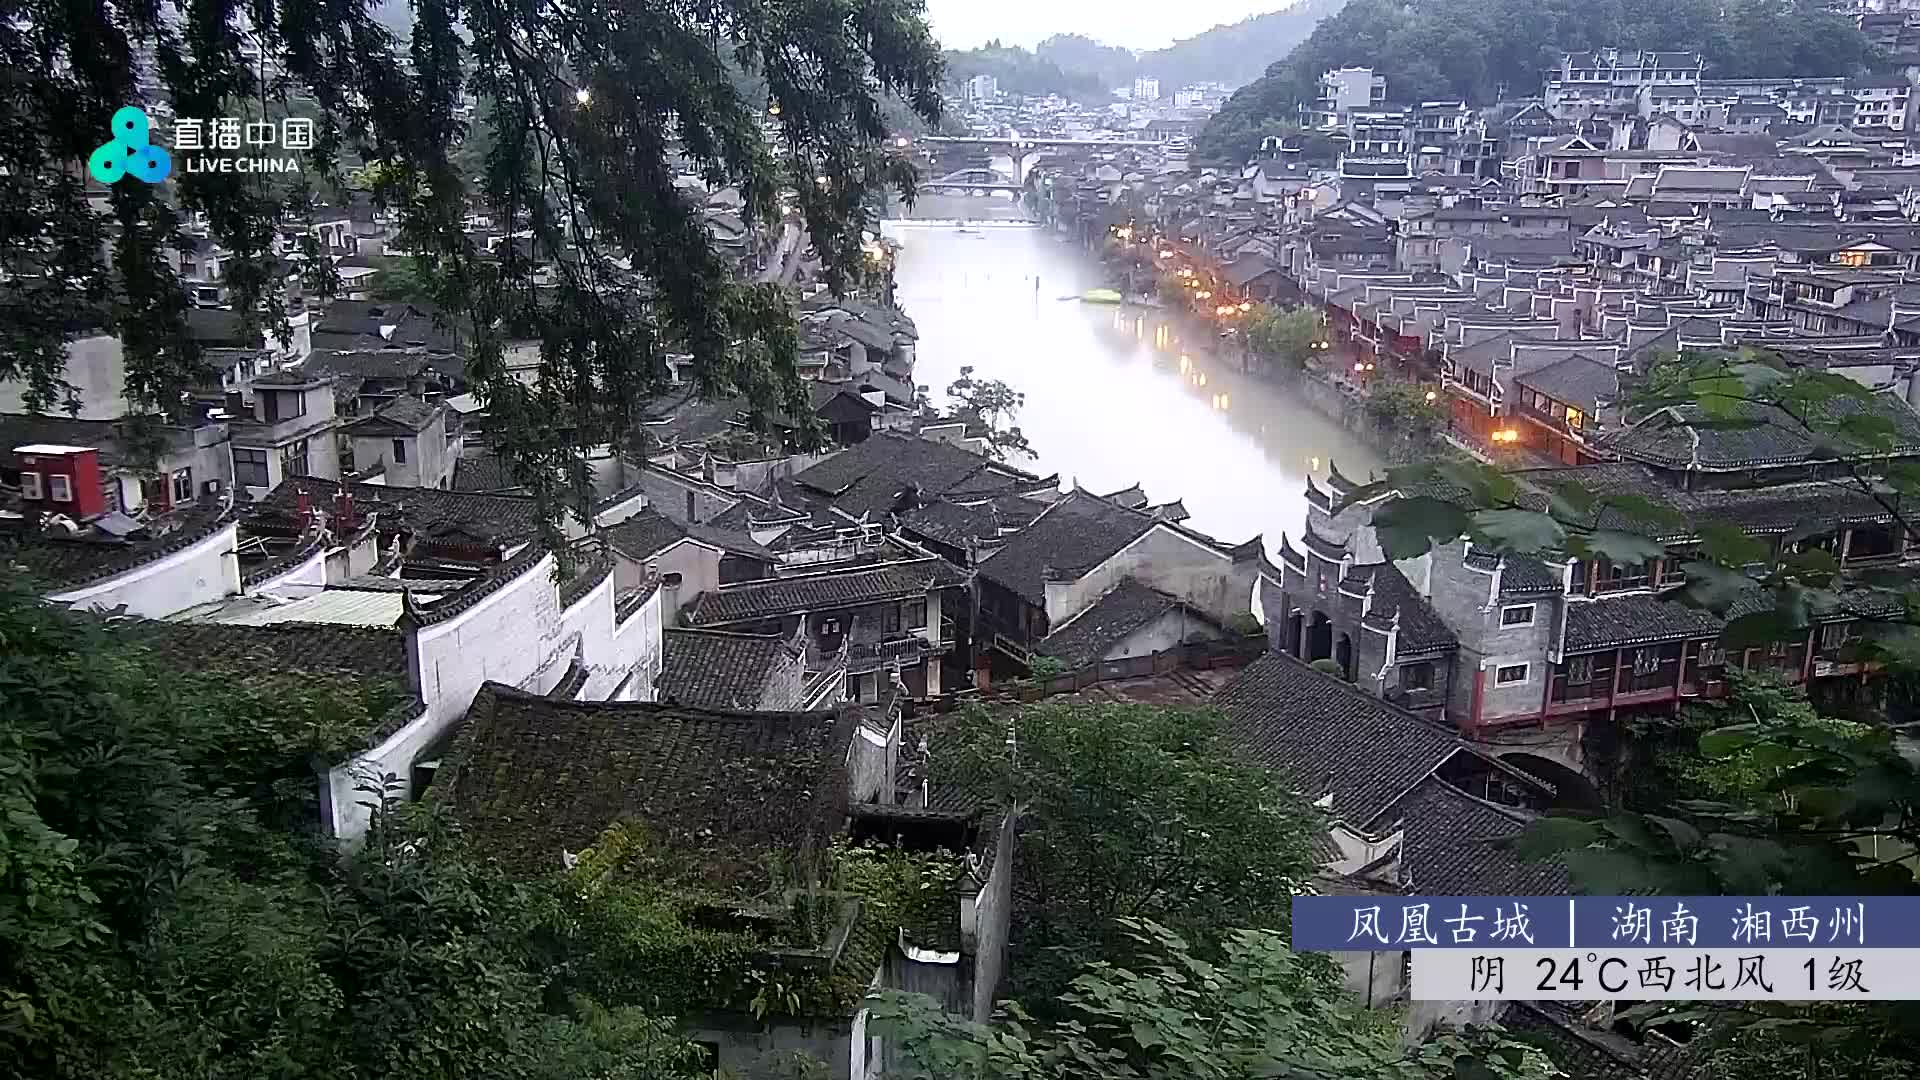 Fenghuang Di. 05:48